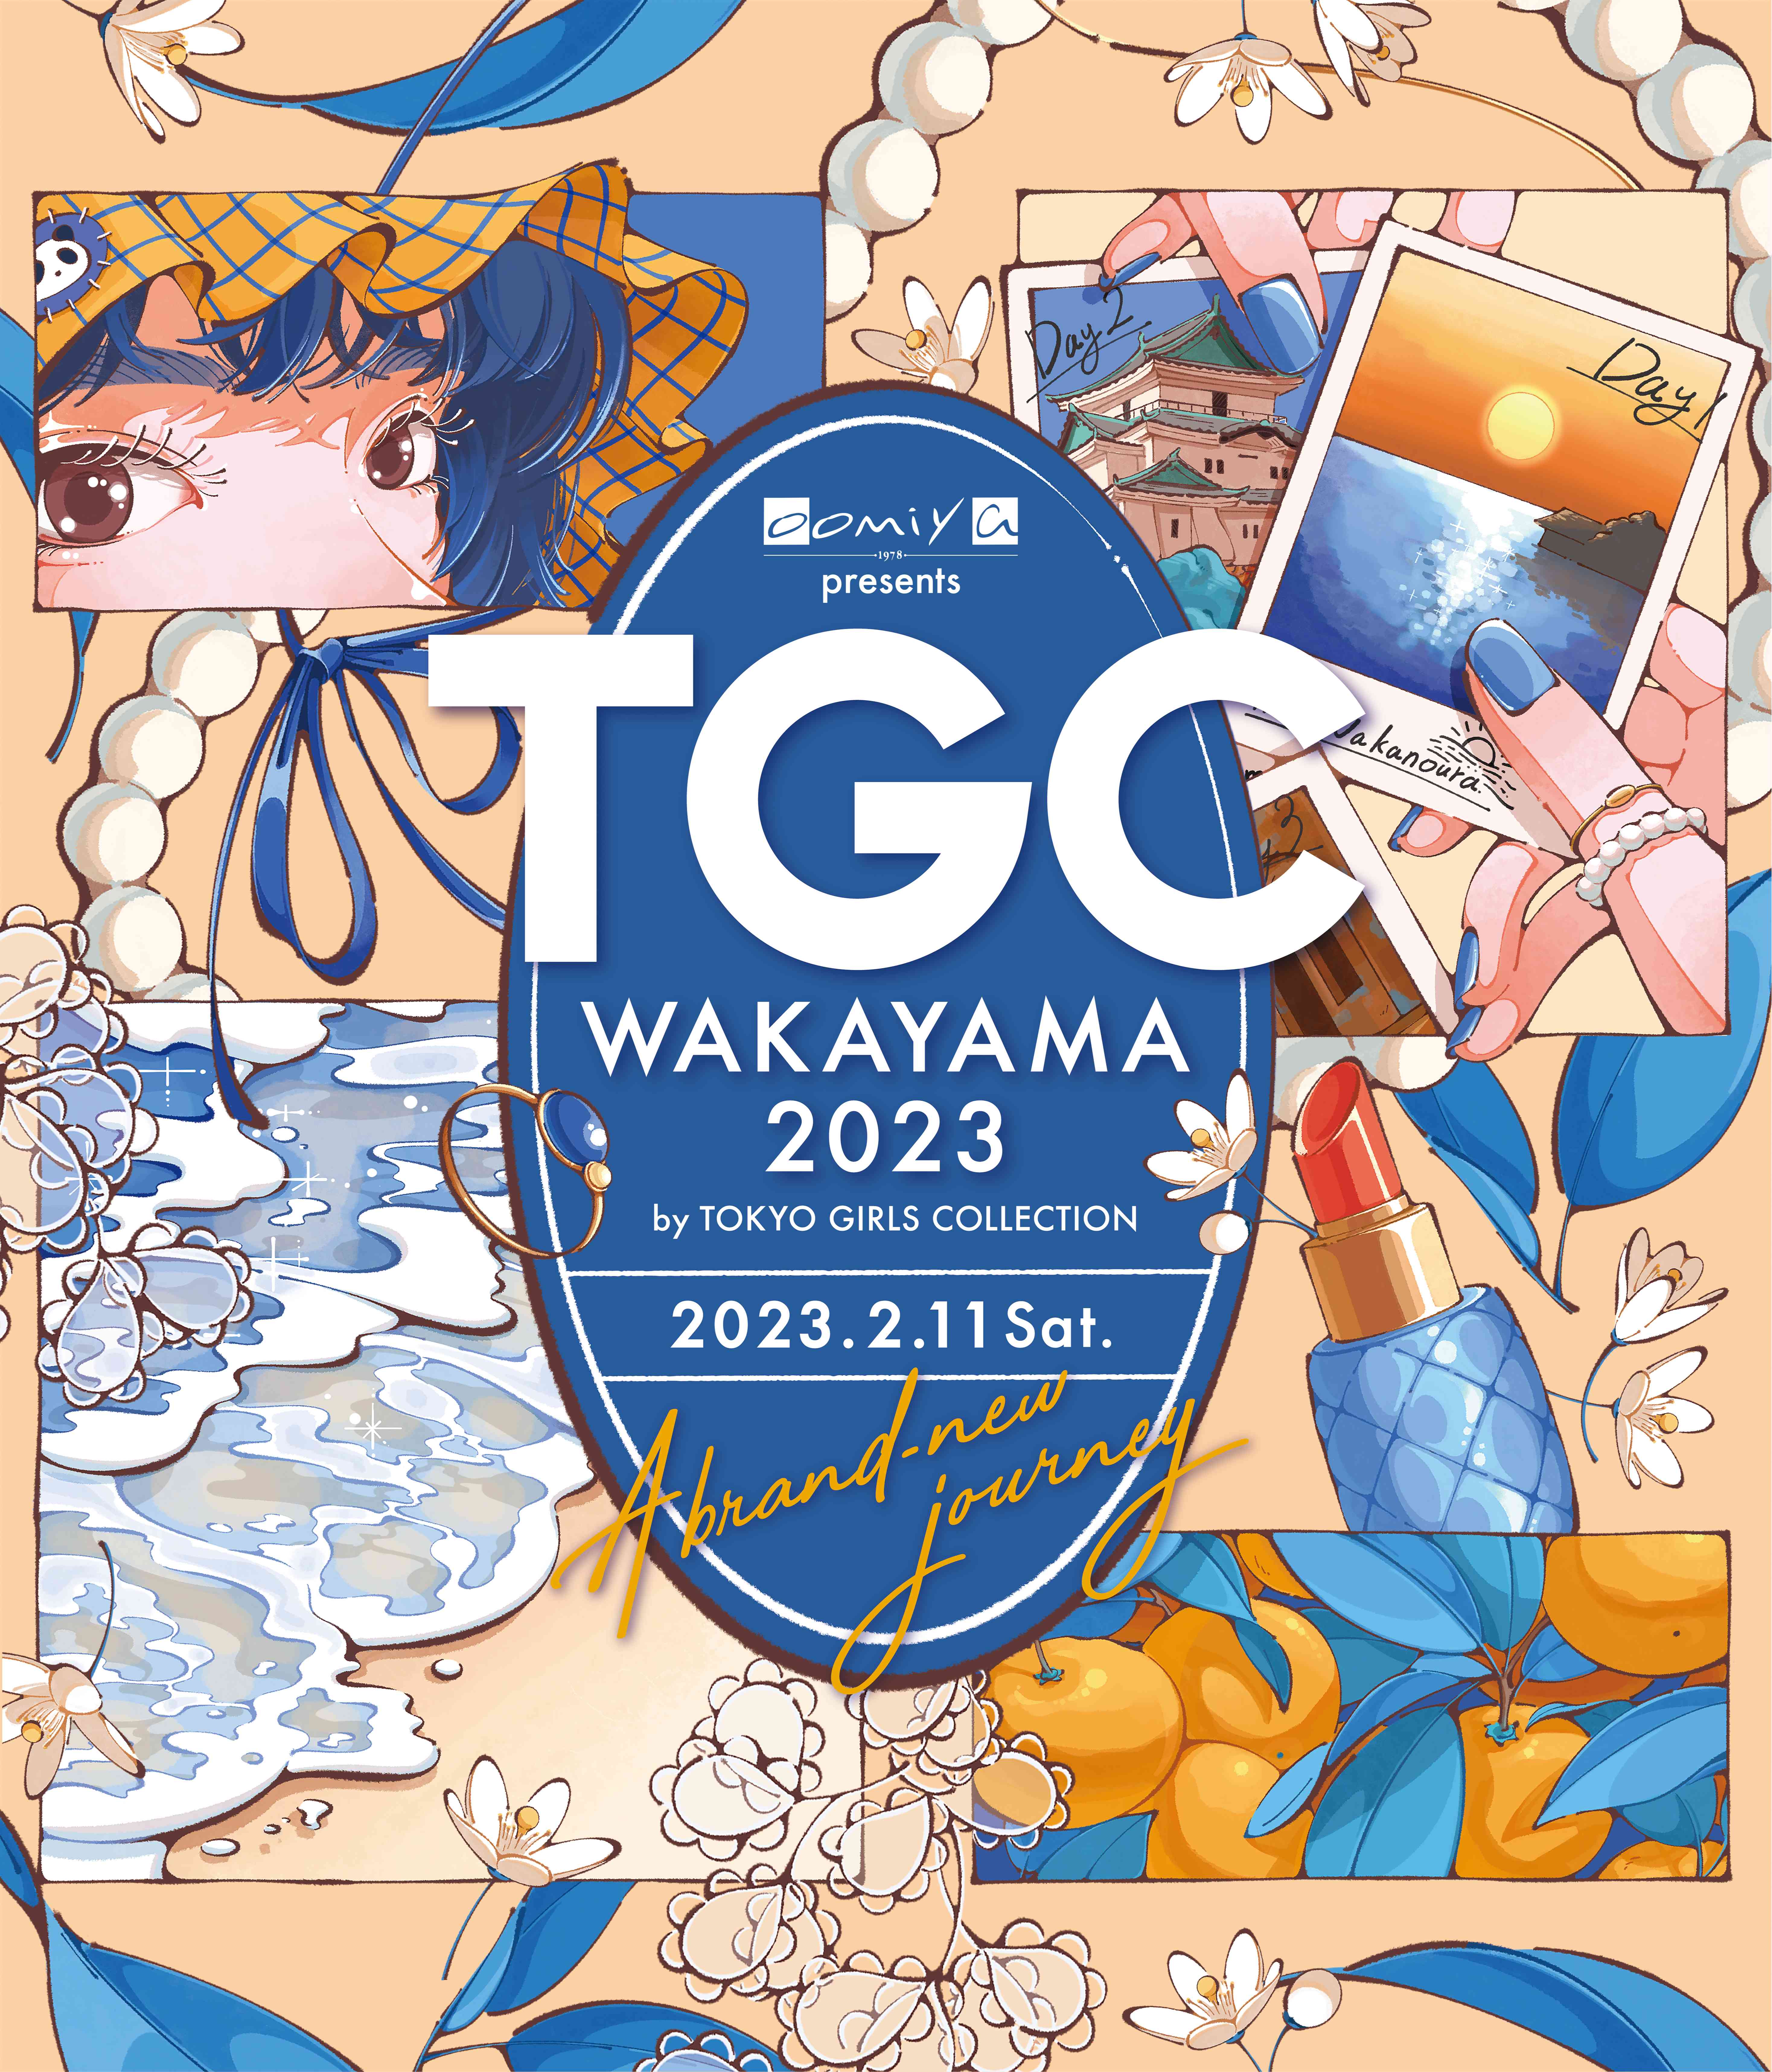 原田波人 TGC WAKAYAMA 2023 に出演！ – プロダクションオーロラ